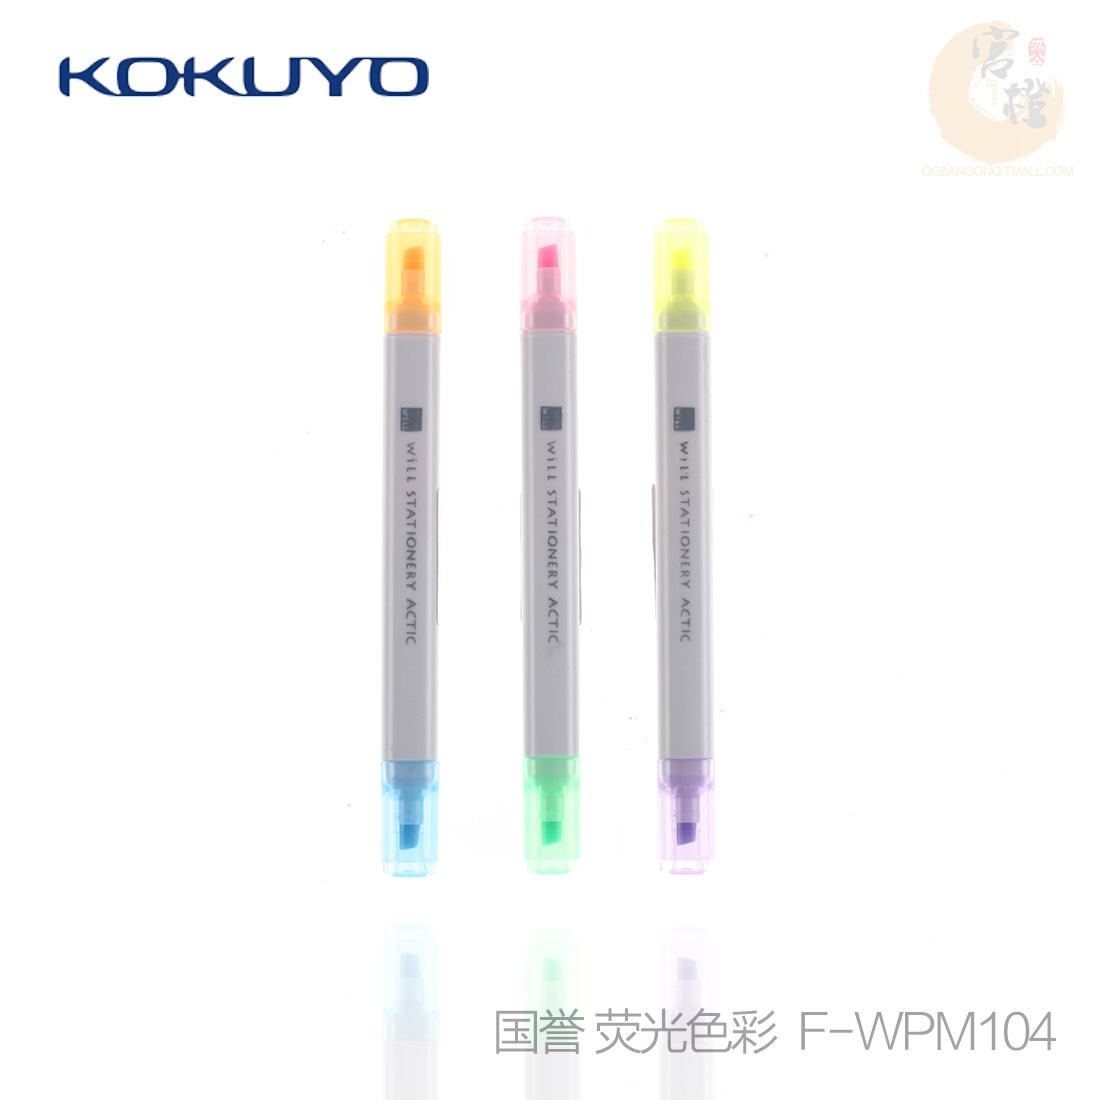 官方授权 日本国誉KOKUYO WILL系列 双头荧光笔 记号笔双头六色